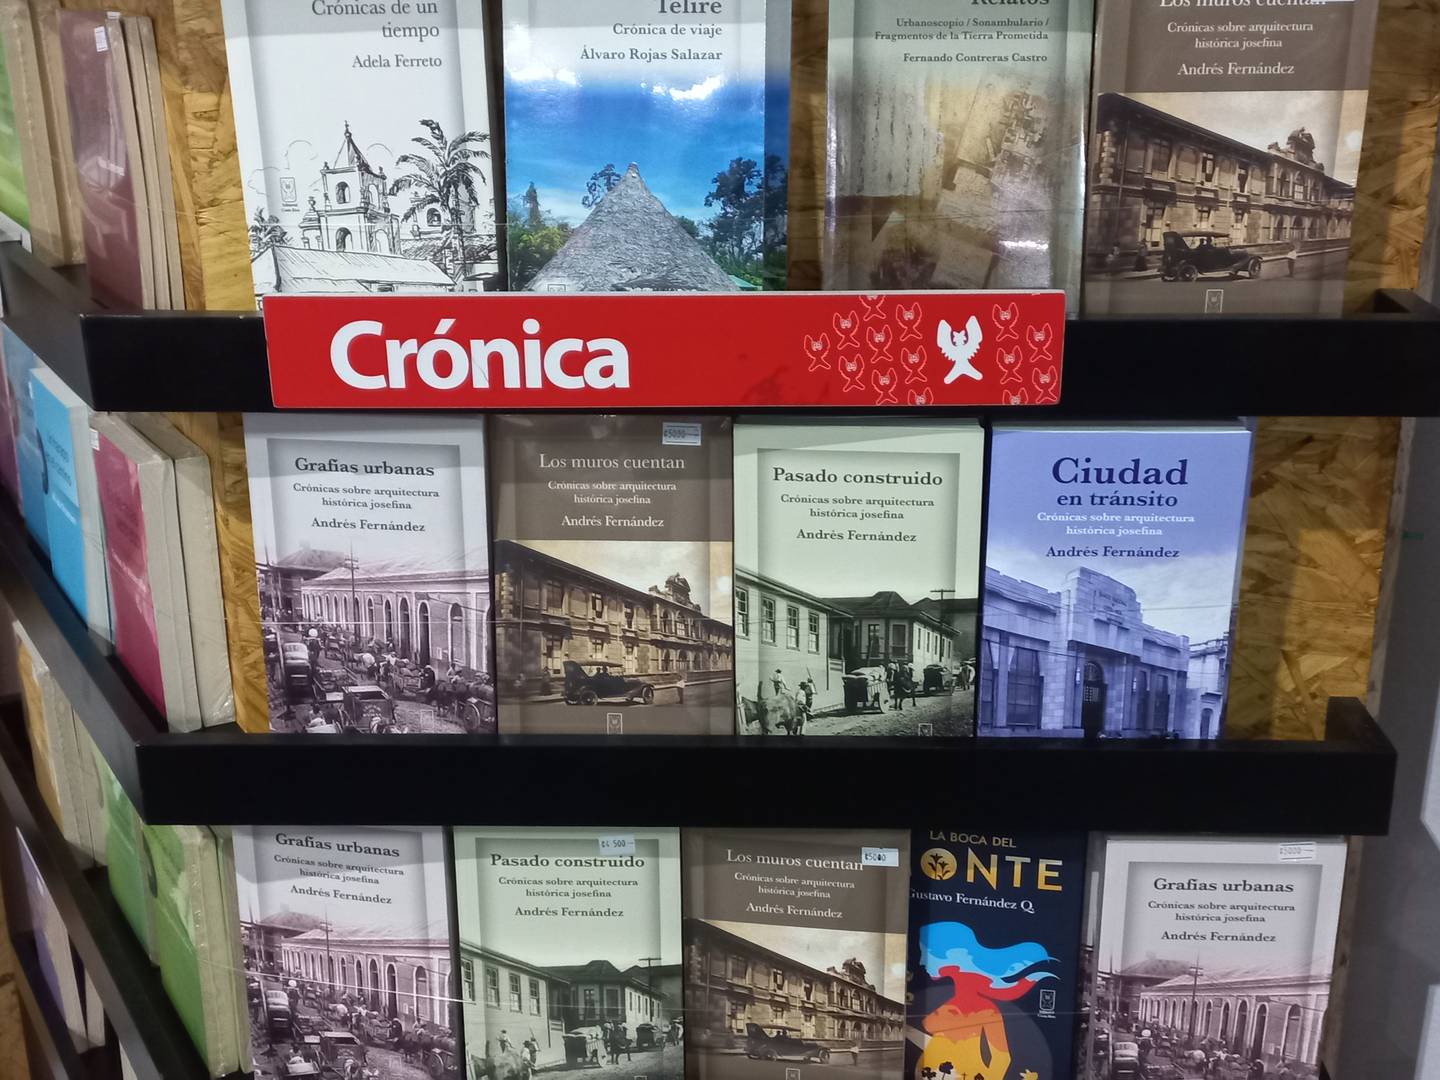 Estos son los cuatro libros de crónicas de Fernández: Grafías urbanas, Los muros cuentan, Pasado construido y Ciudad en tránsito.